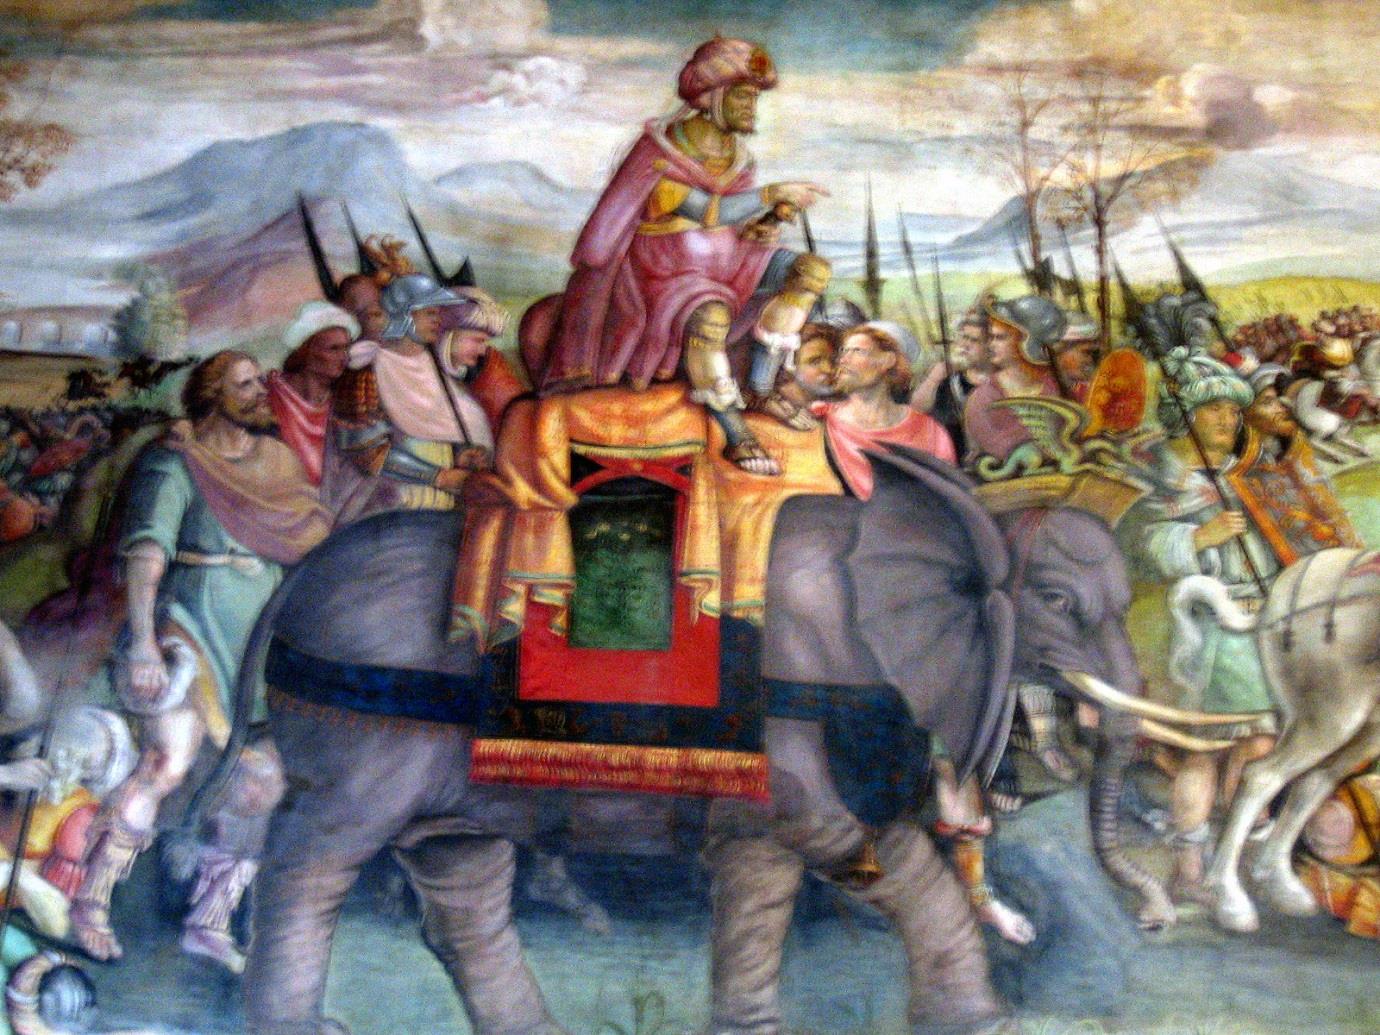 Váleční sloni 6) Součástí Hannibalovy armády byli i váleční sloni, kteří museli přetrpět